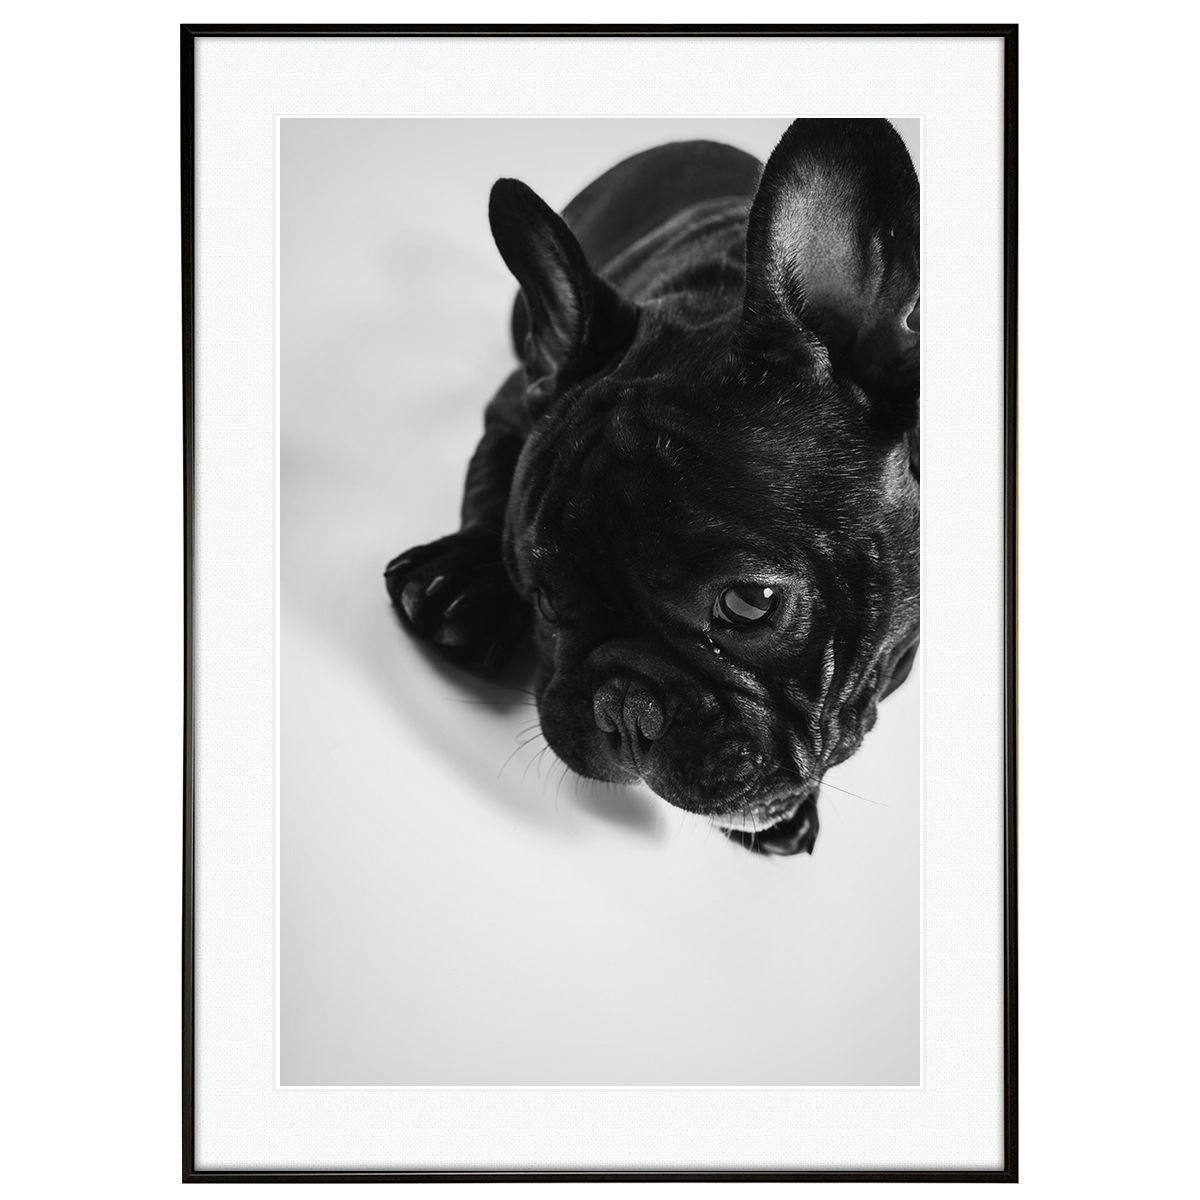 安い割引 動物写真 犬 フレンチブルドッグ インテリア モノクロアートポスター額装 AS1820 17028円 美術品